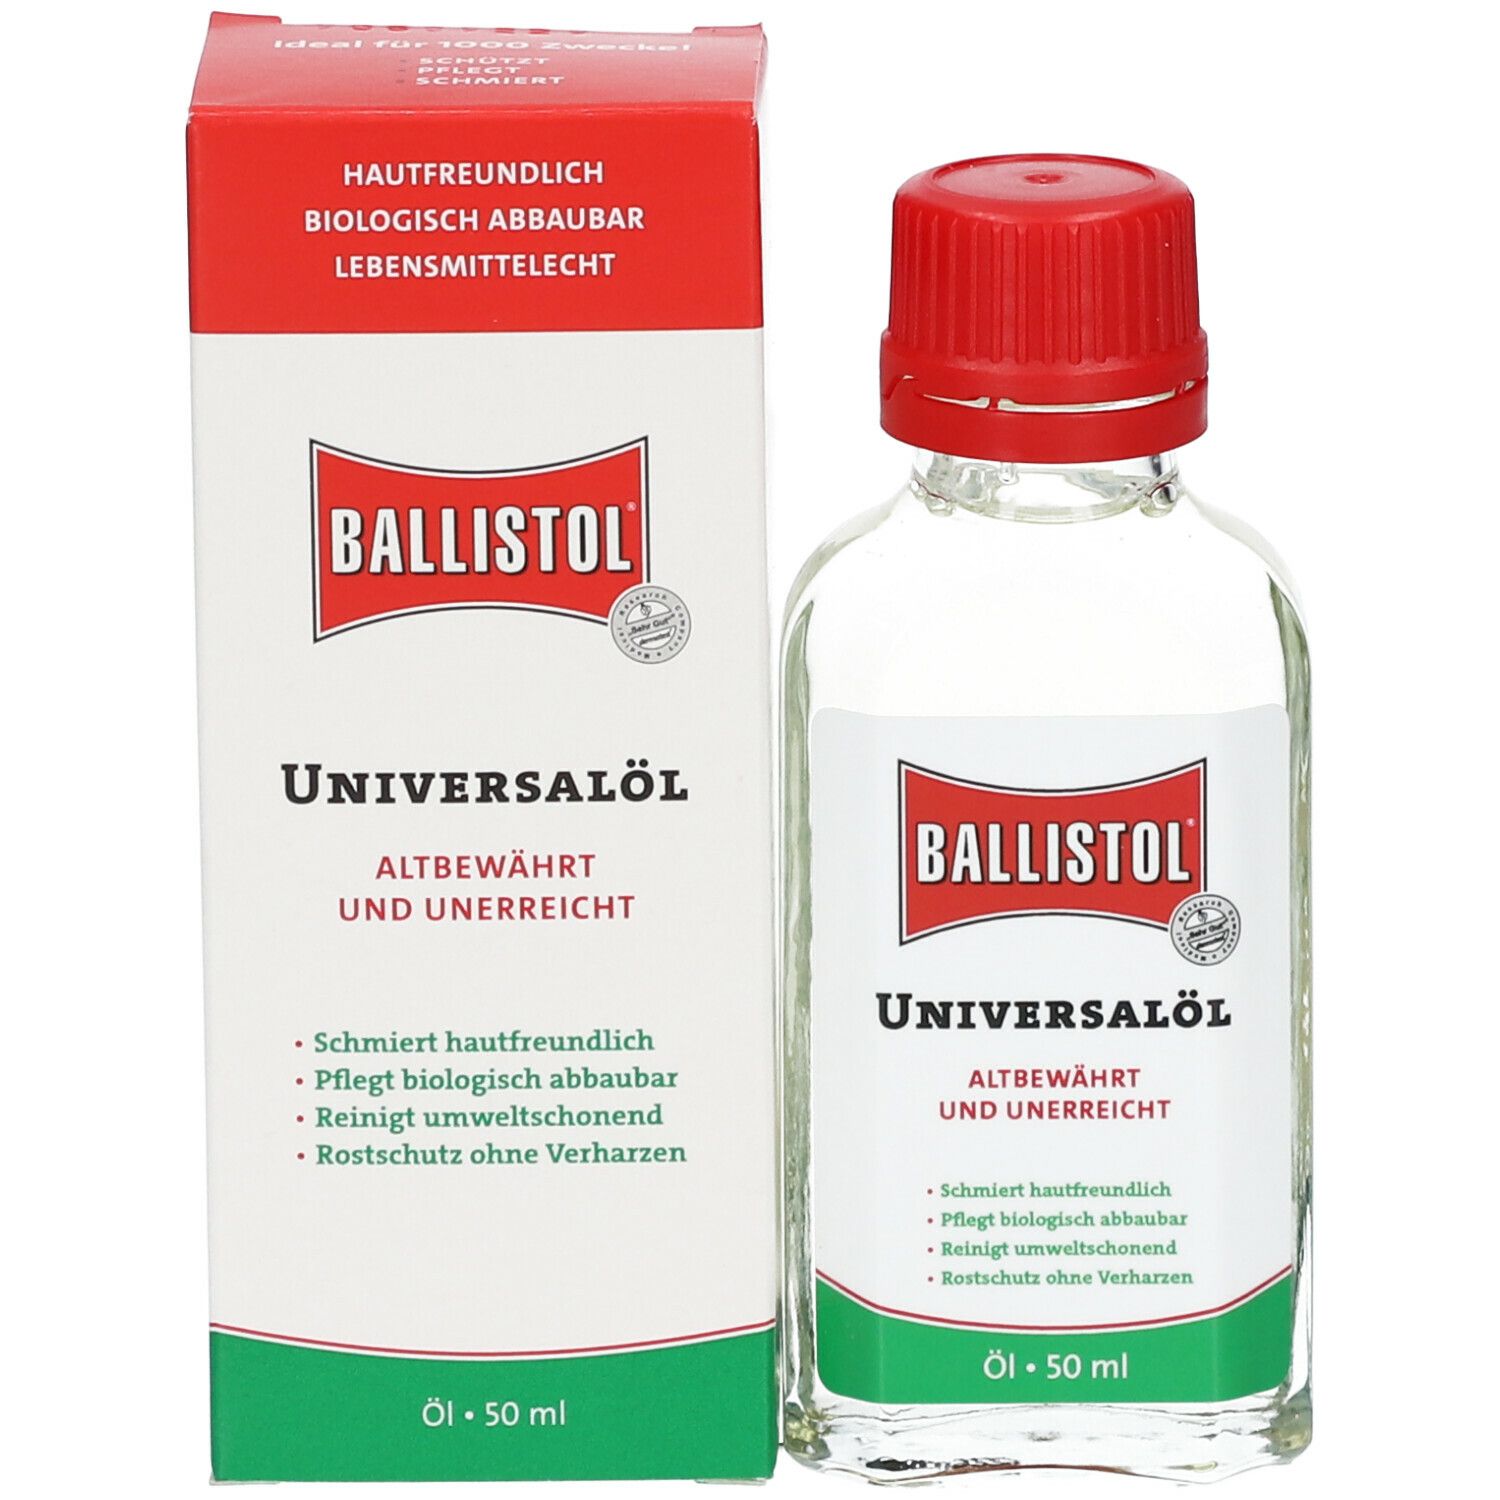 KLEVER Fallen-Öl Ballistol 65 ml